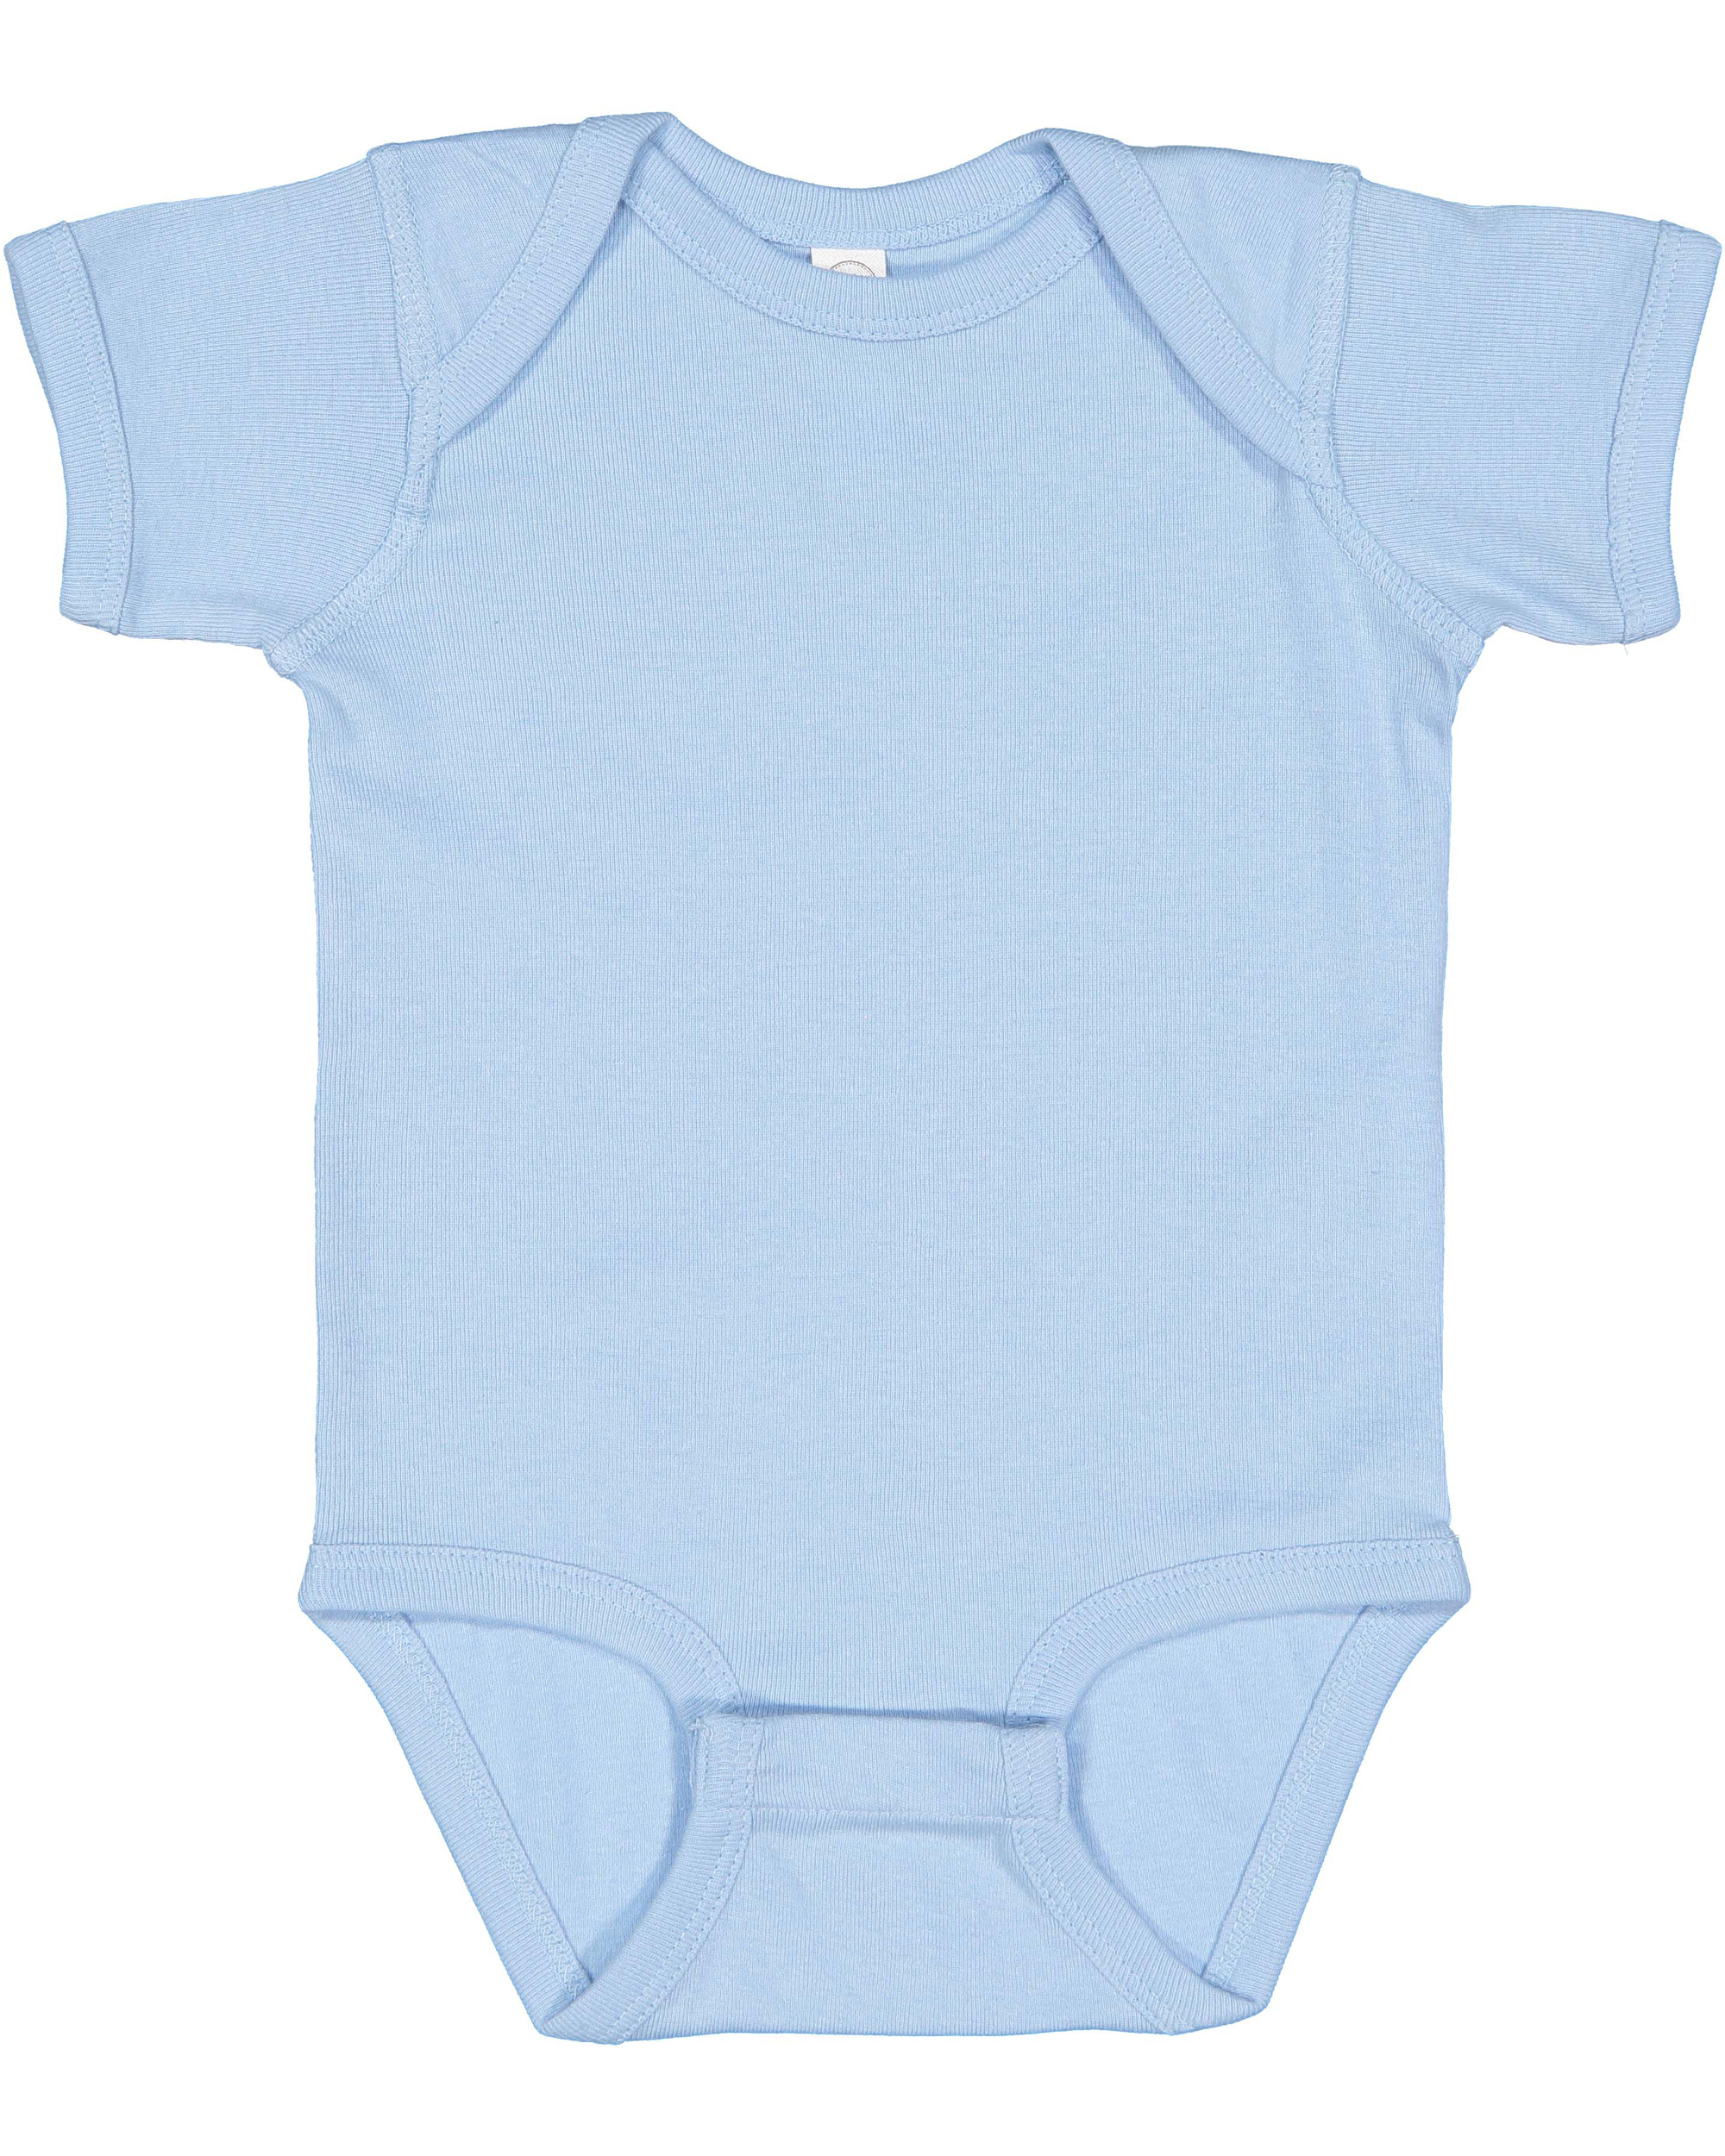 Rabbit Skins® 4400 Infant Baby Rib Bodysuit